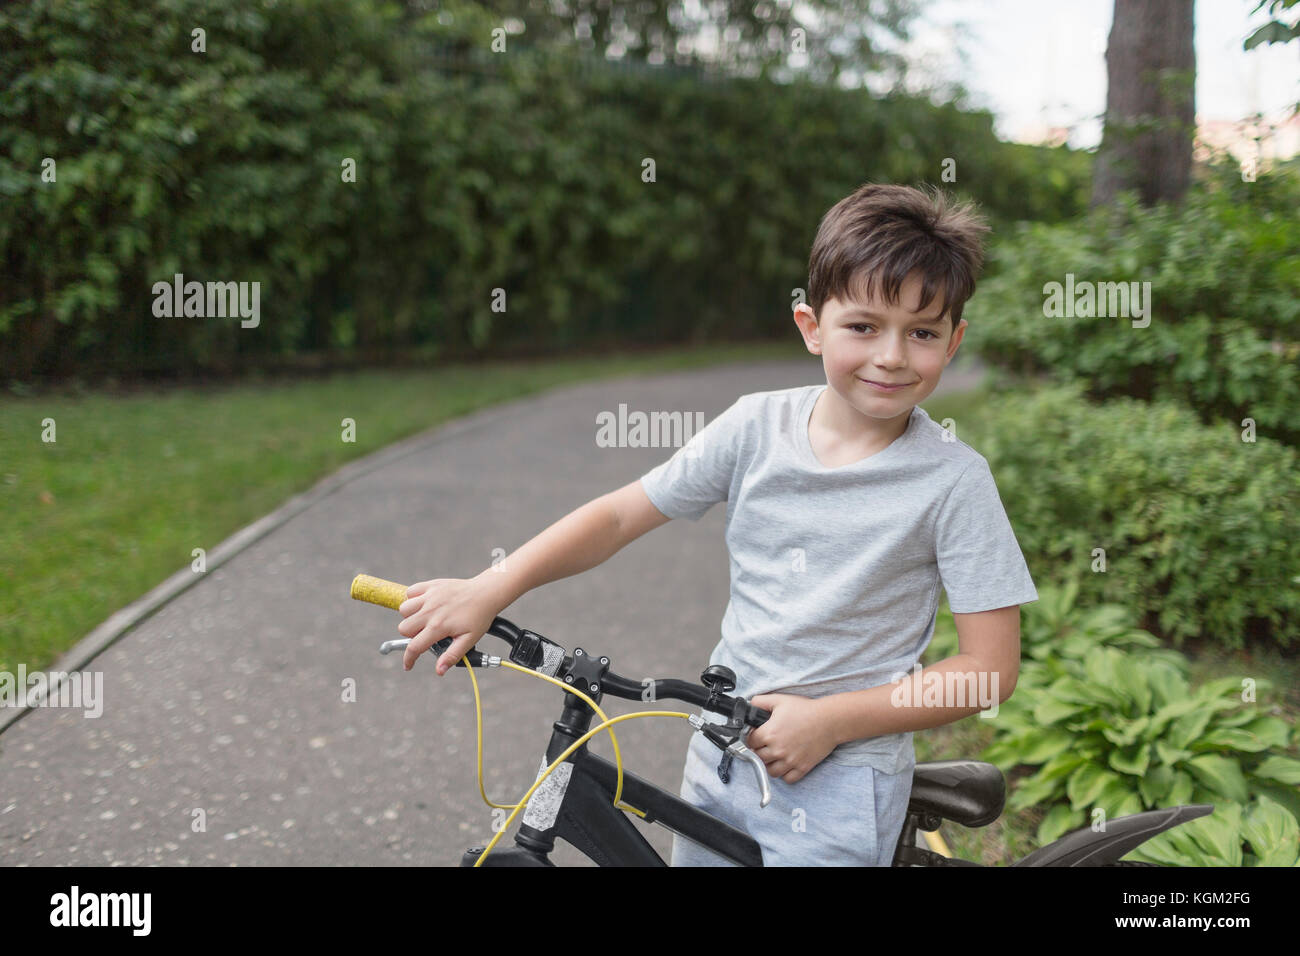 Portrait of boy riding bicycle on street contre des plantes Banque D'Images